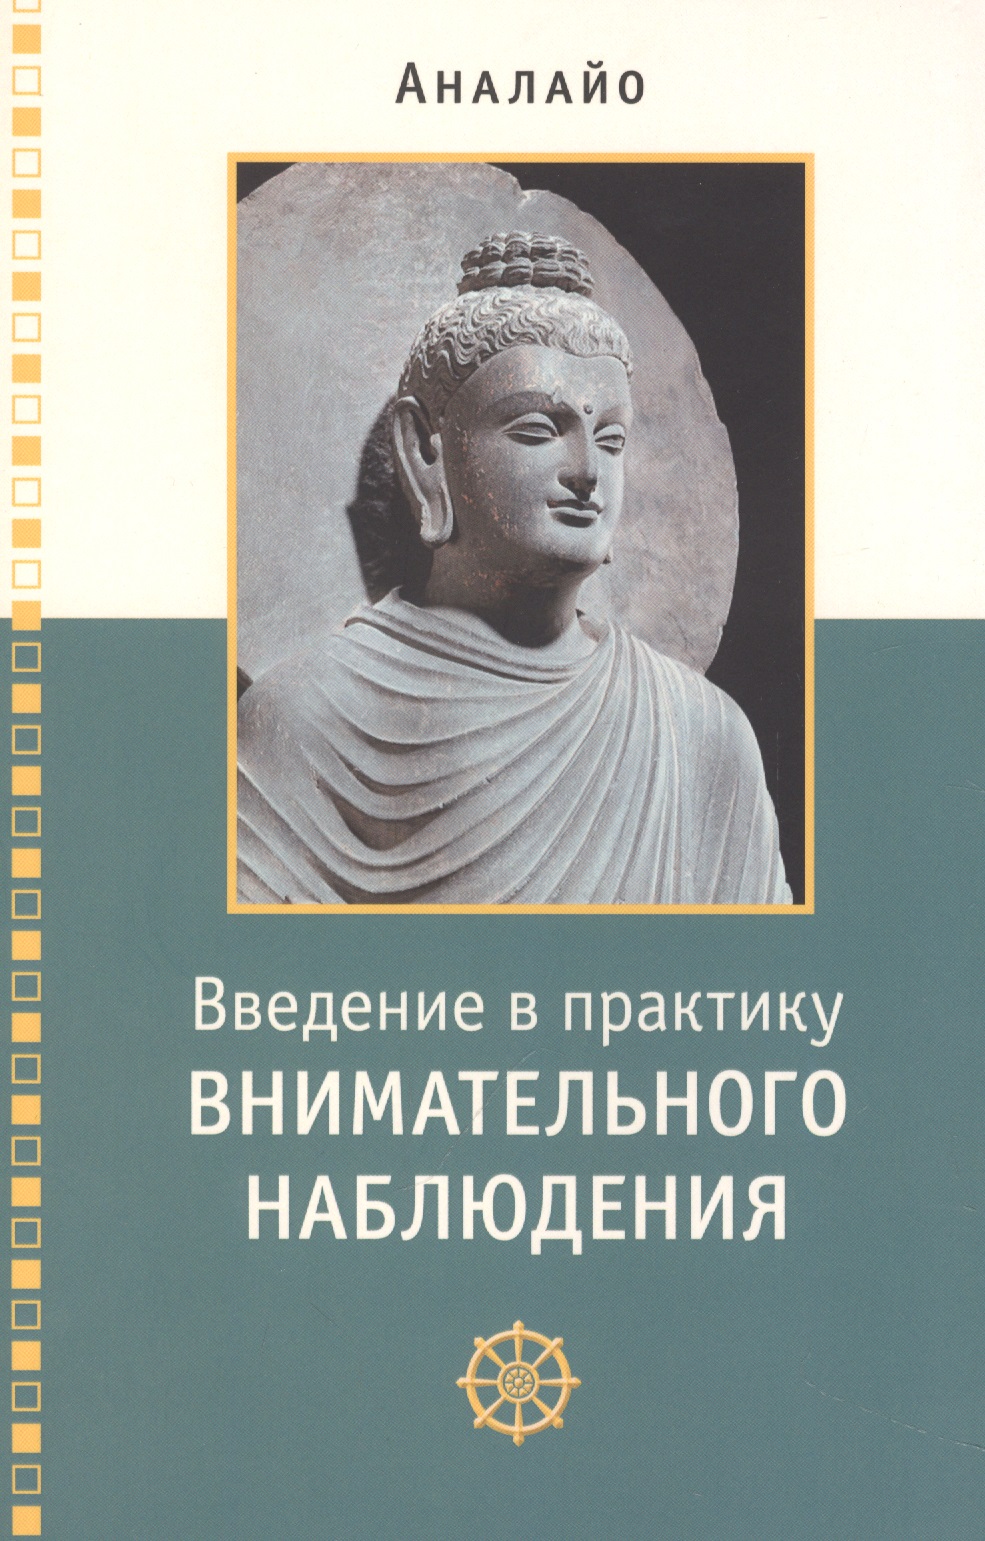 Аналайо Бхиккху Введение в практику внимательного наблюдения Буддийское обоснование и практические занятия аналайо бхикку медитация сатипаттхана практическое руководство